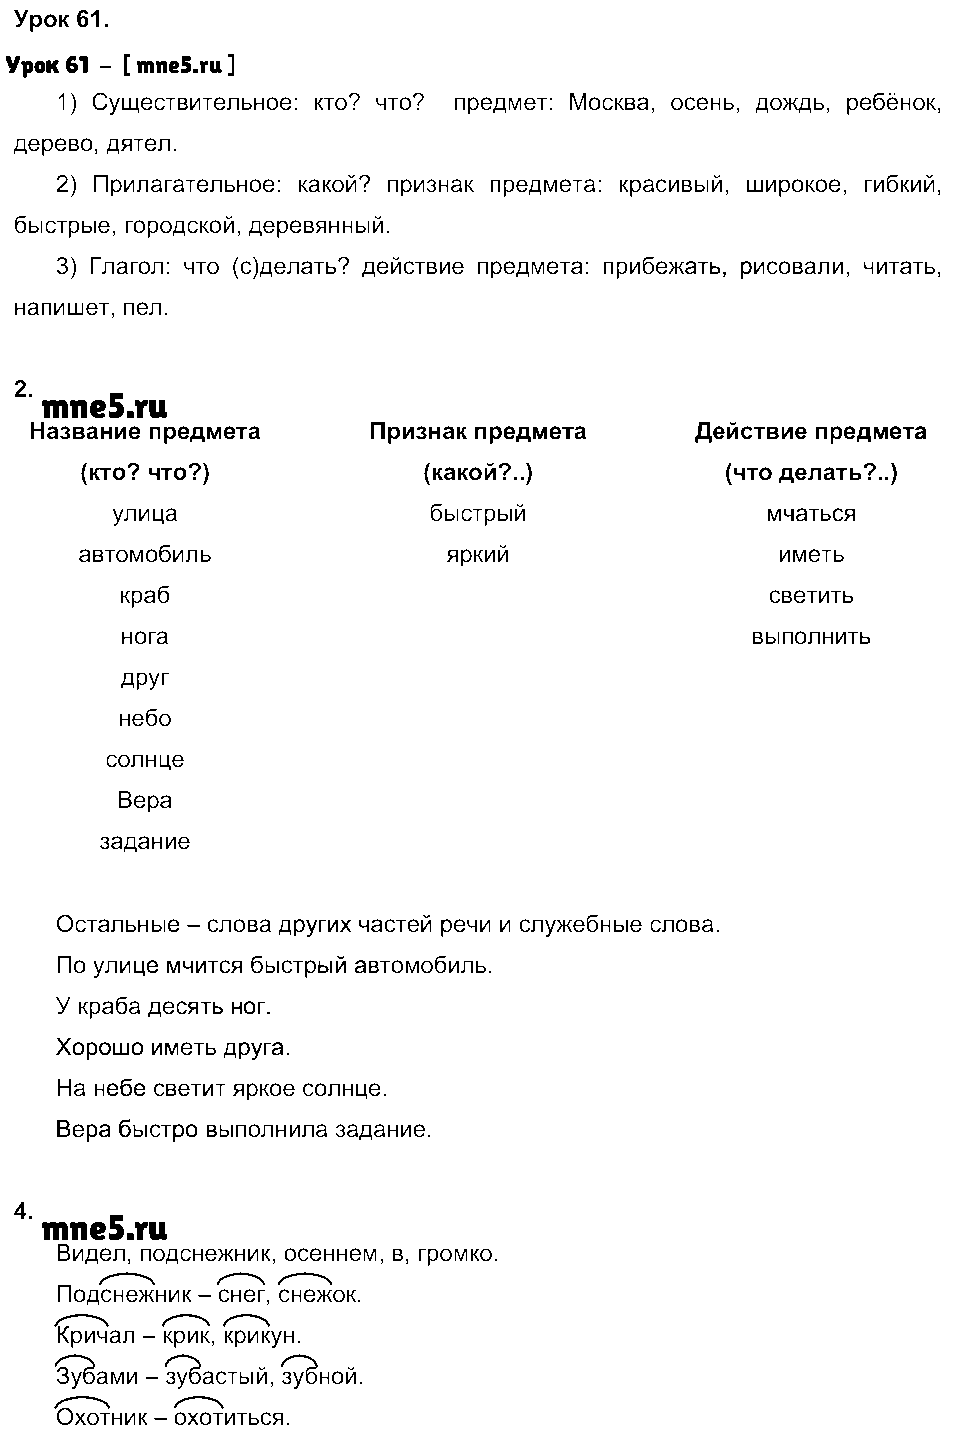 ГДЗ Русский язык 3 класс - Урок 61